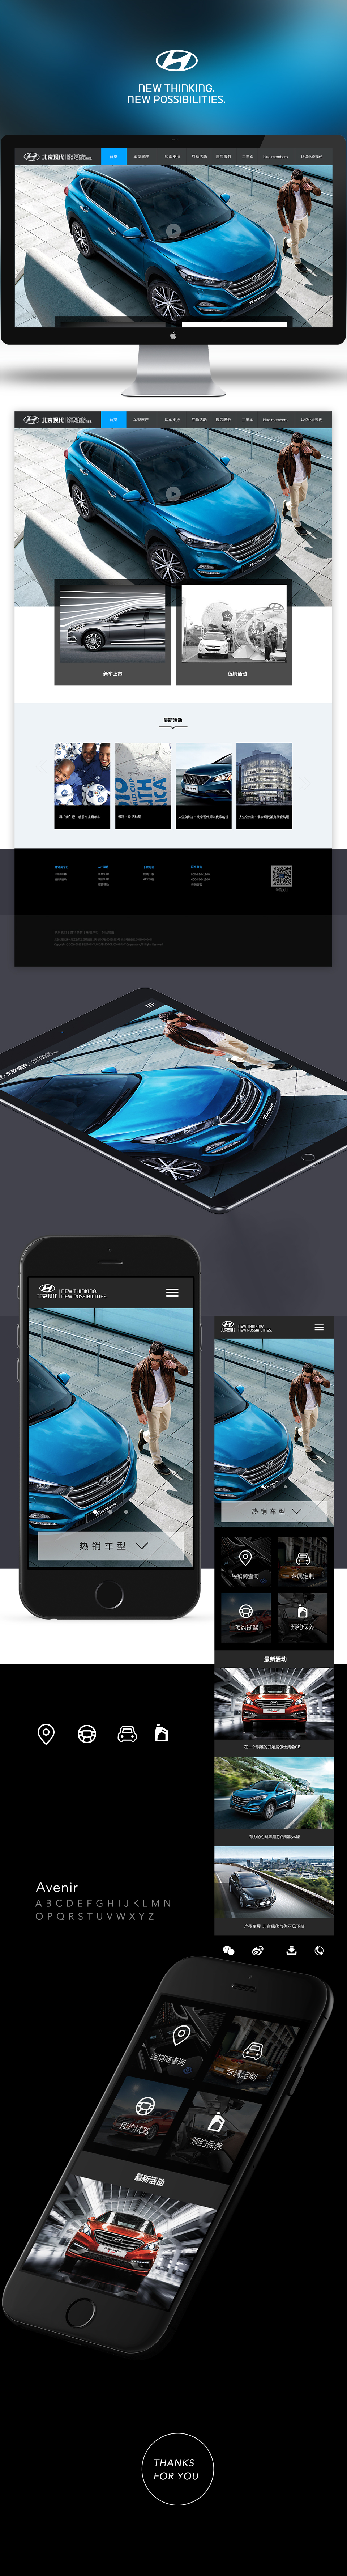 北京现代汽车官网web+wap ui设计图0